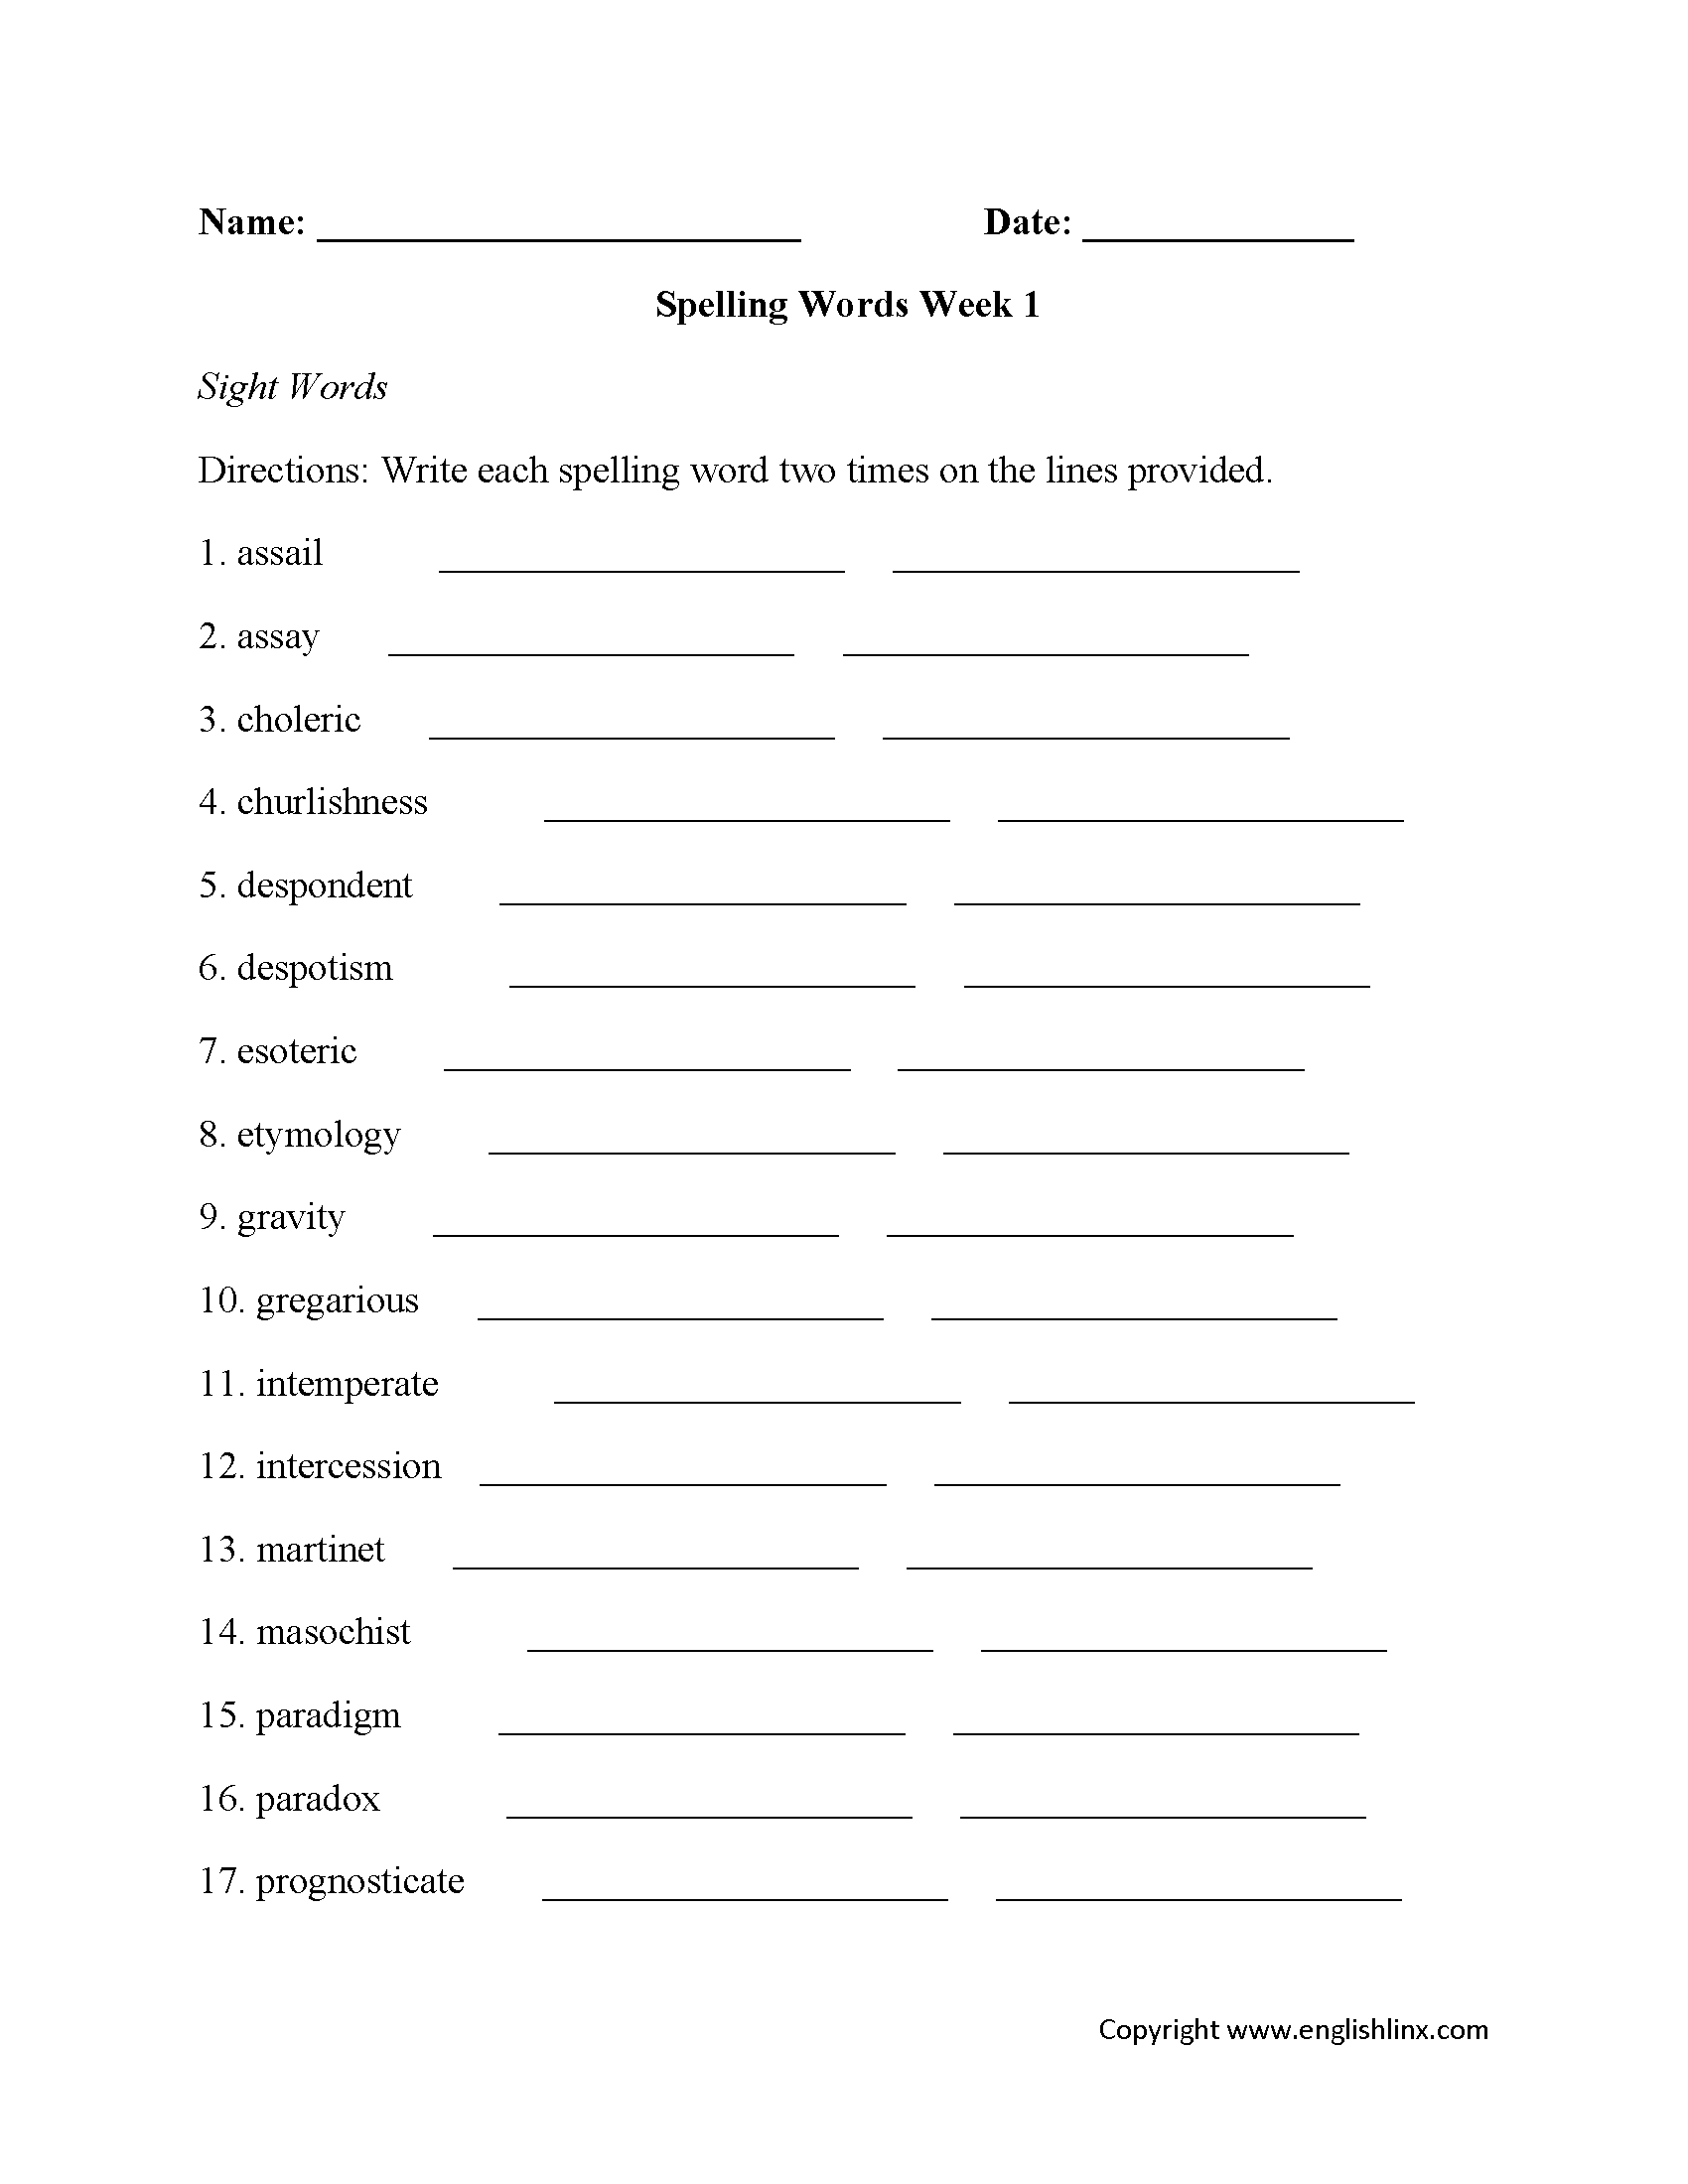 Spelling Worksheets | High School Spelling Worksheets - Free Printable Spelling Worksheets For Adults